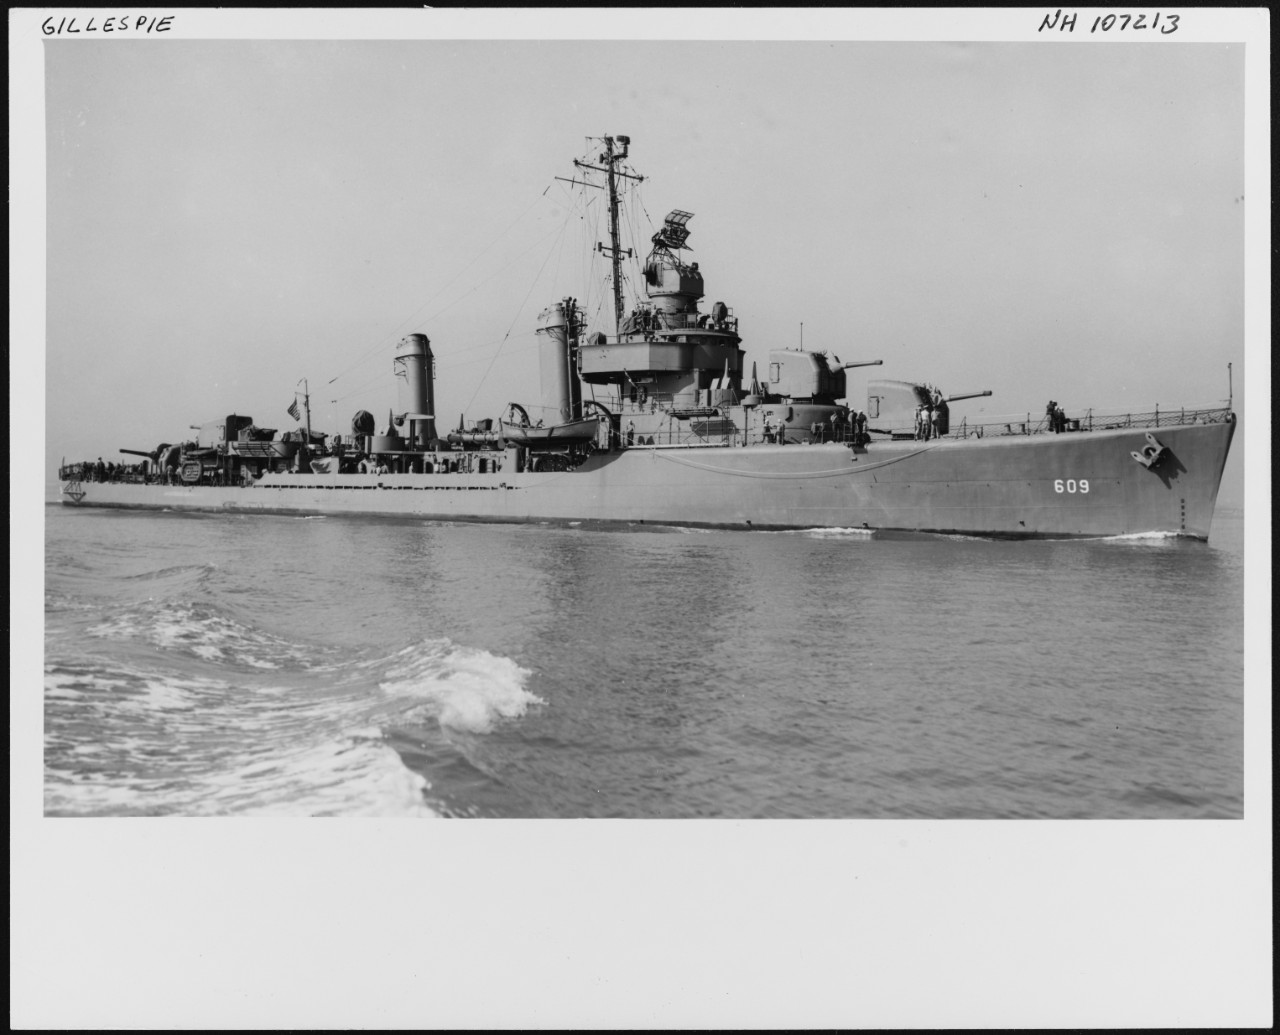 Photo #: NH 107213  USS Gillespie